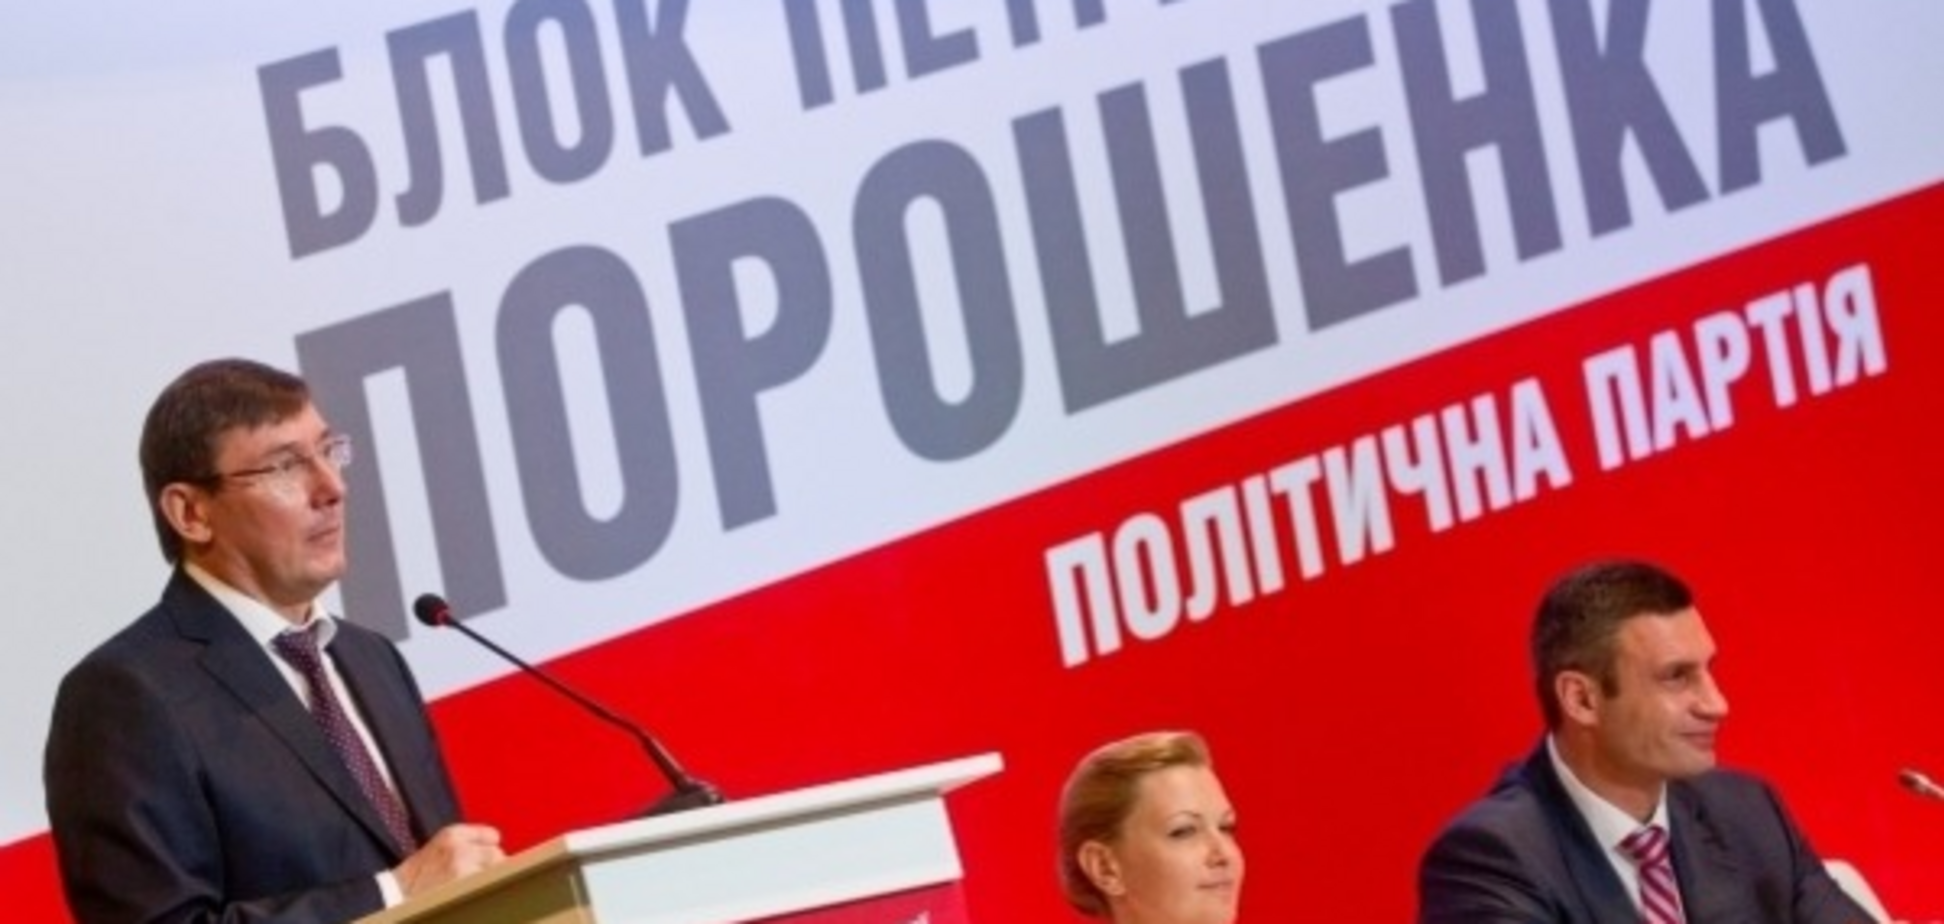 ЗМІ дізналися про 'мобілізацію' в 'Блоці Петра Порошенка'